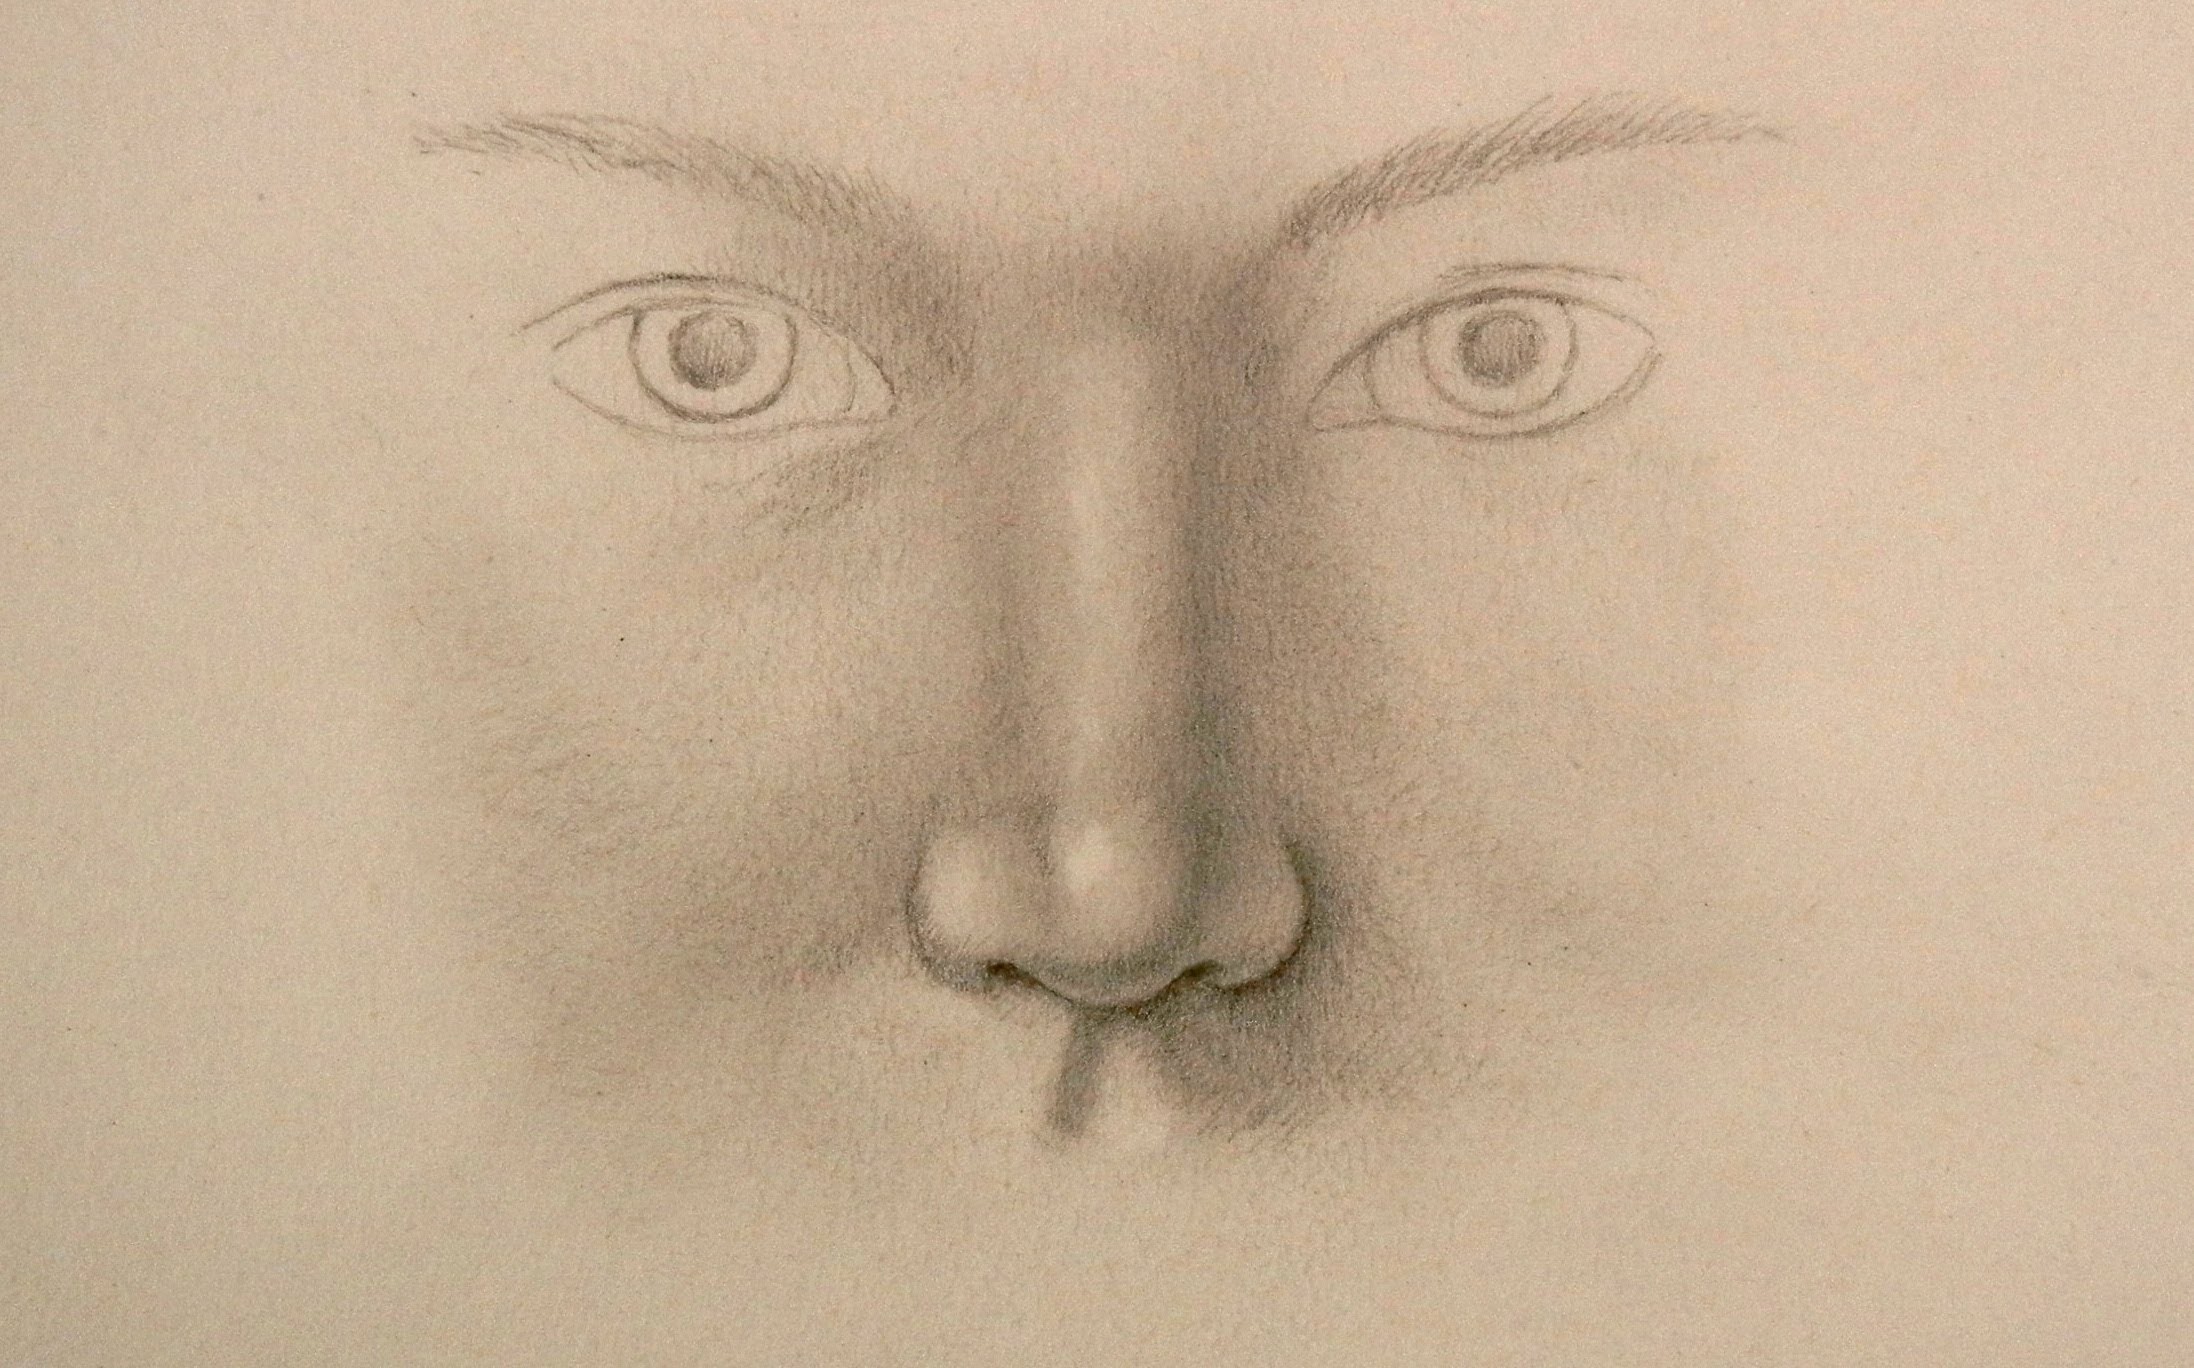 Cómo dibujar una nariz realista - Arte Divierte.